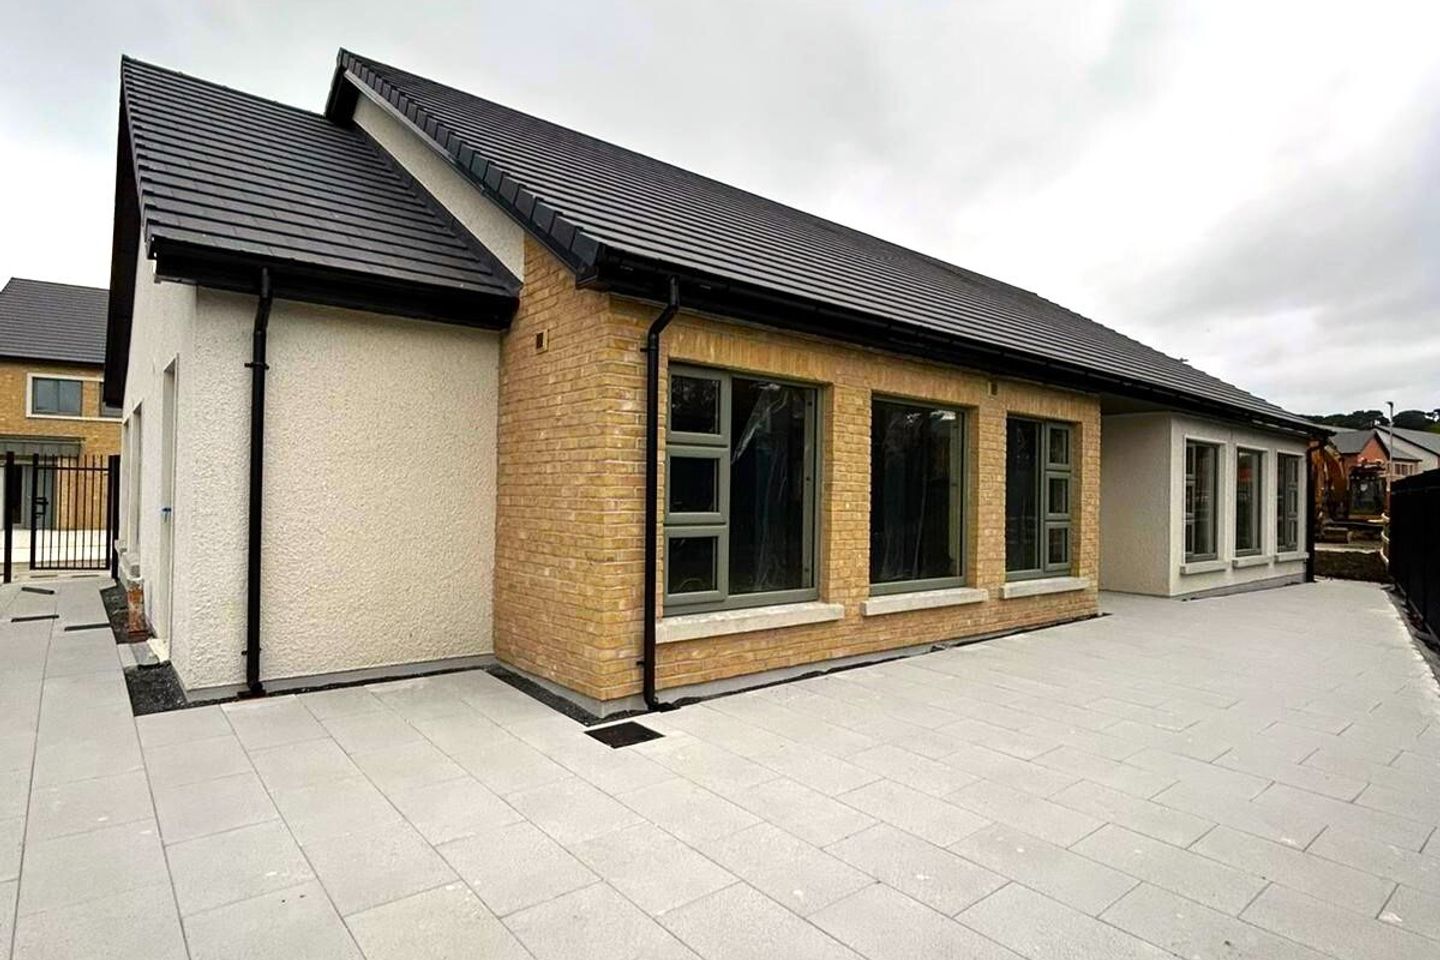 New Purpose Built Creche Facility, Littlebrook, Delgany, Co. Wicklow